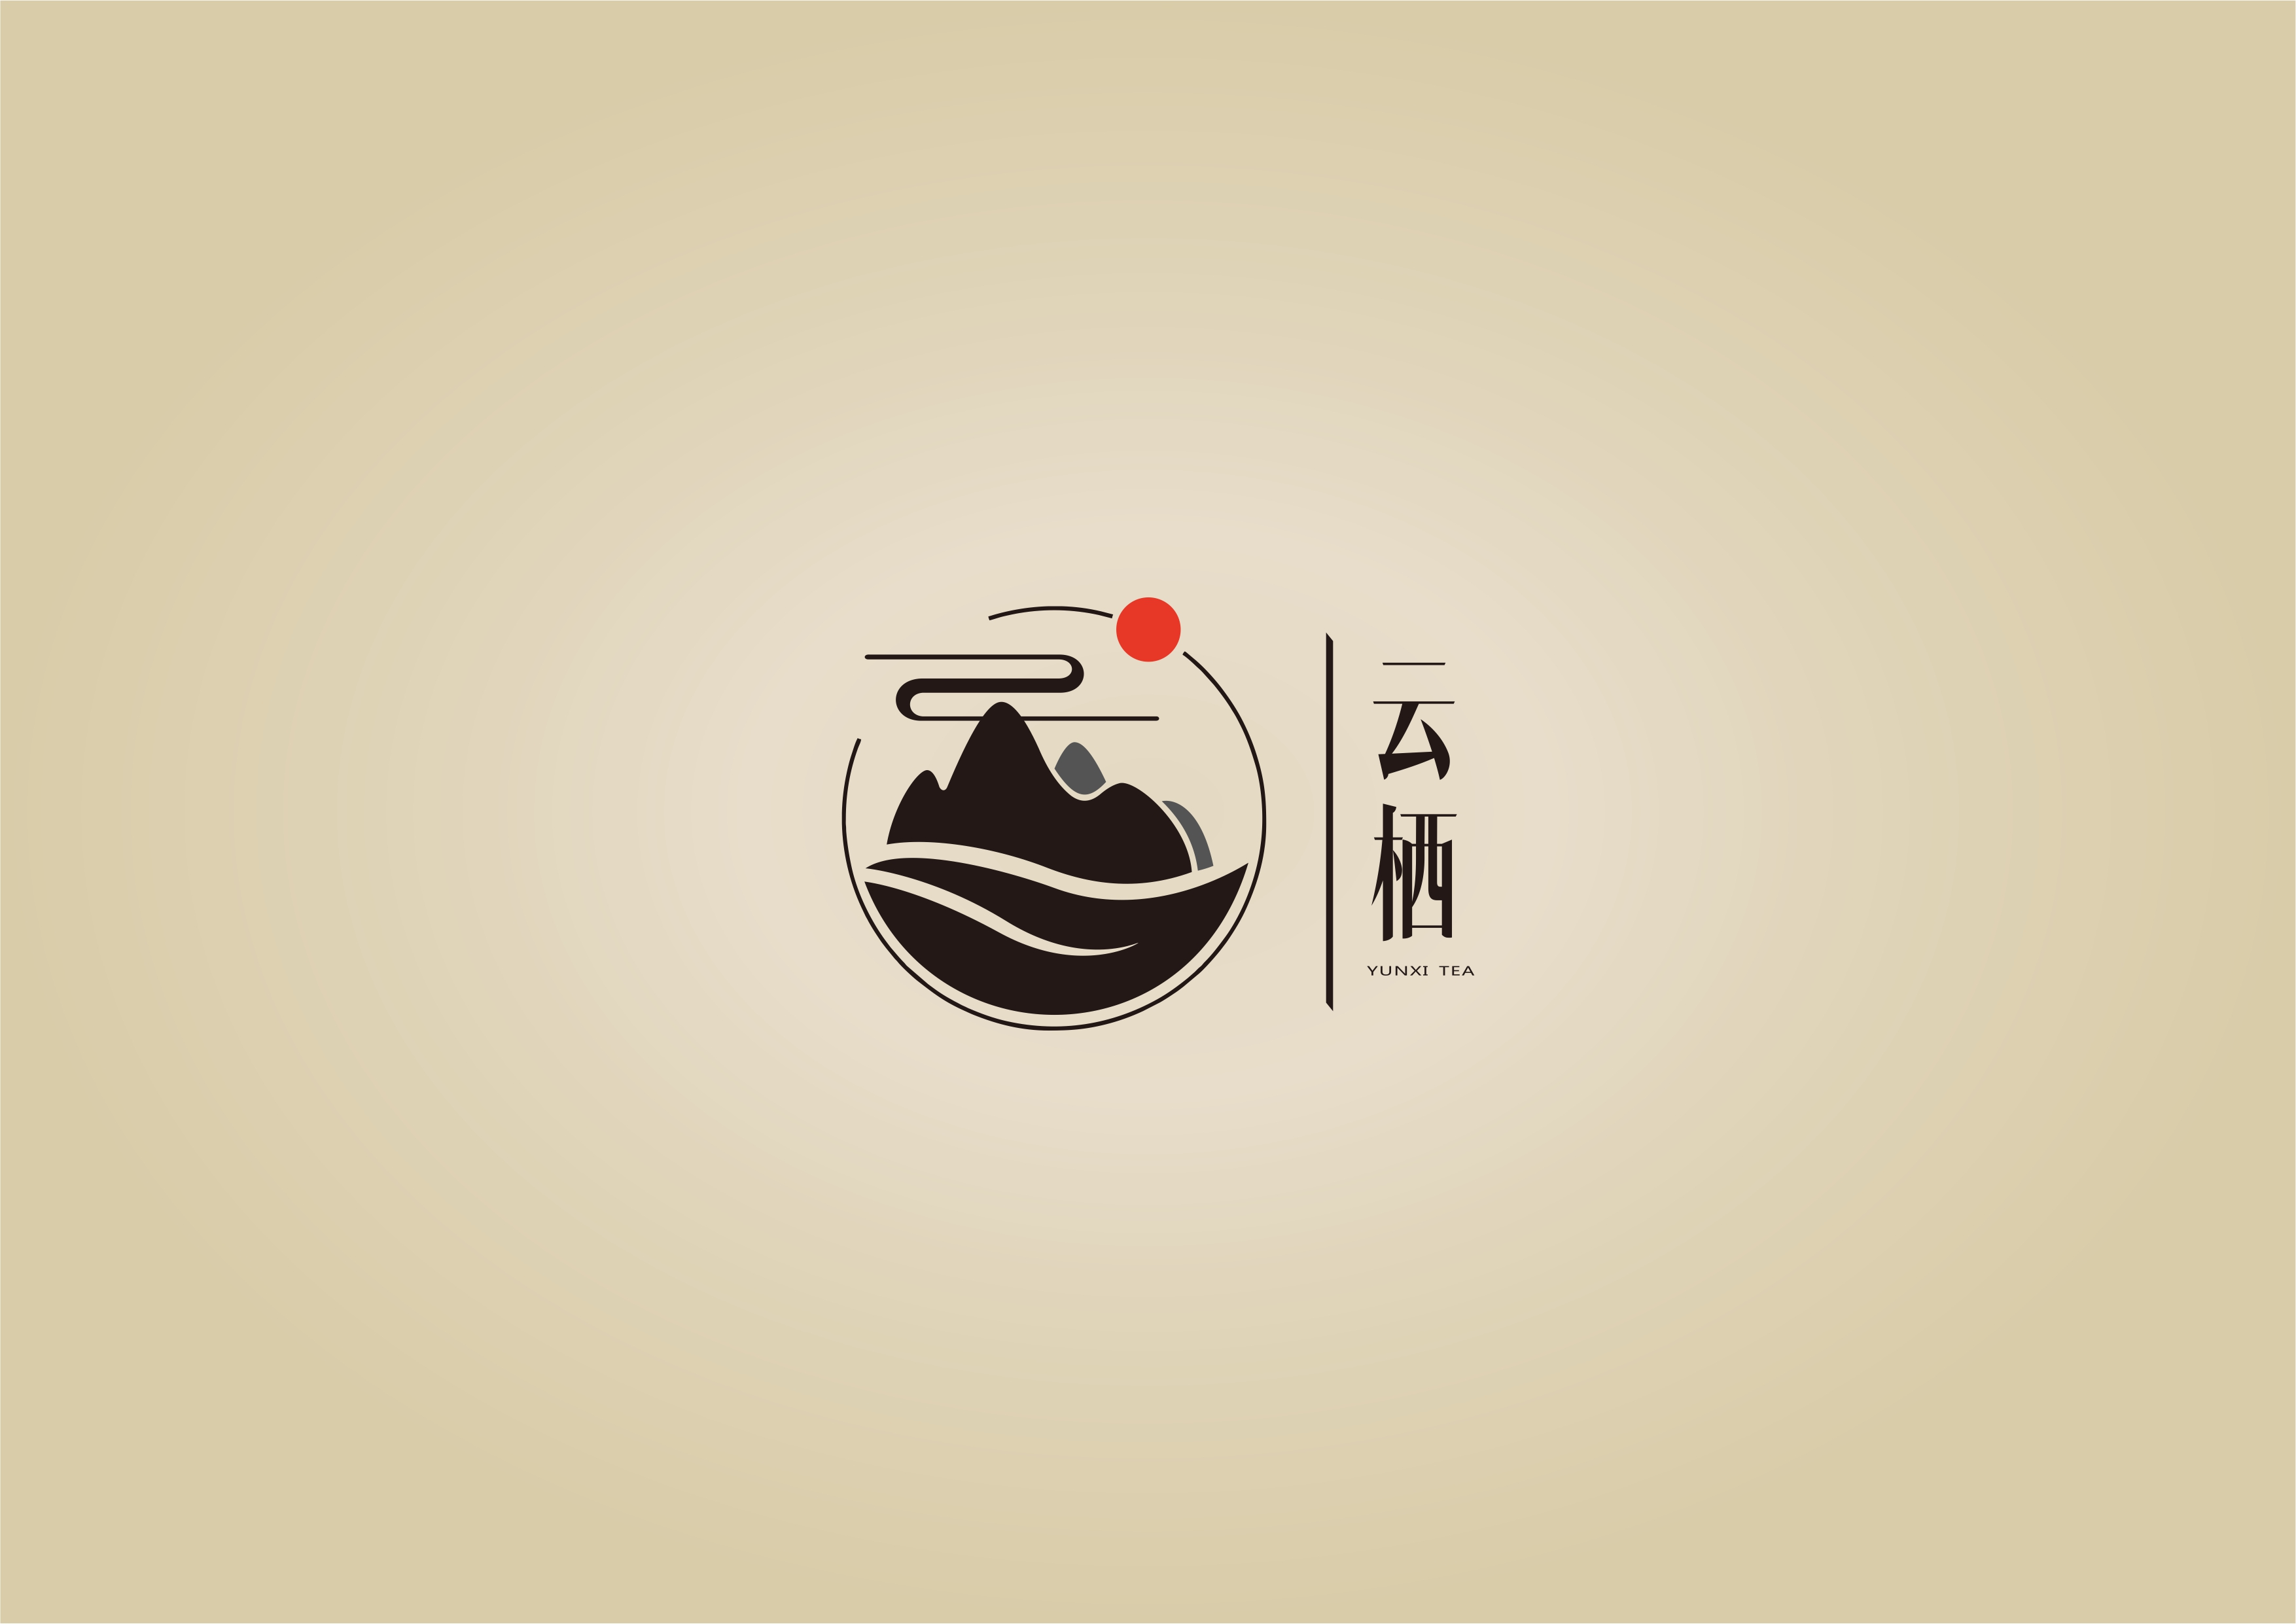 庐山云雾茶 logo与包装设计